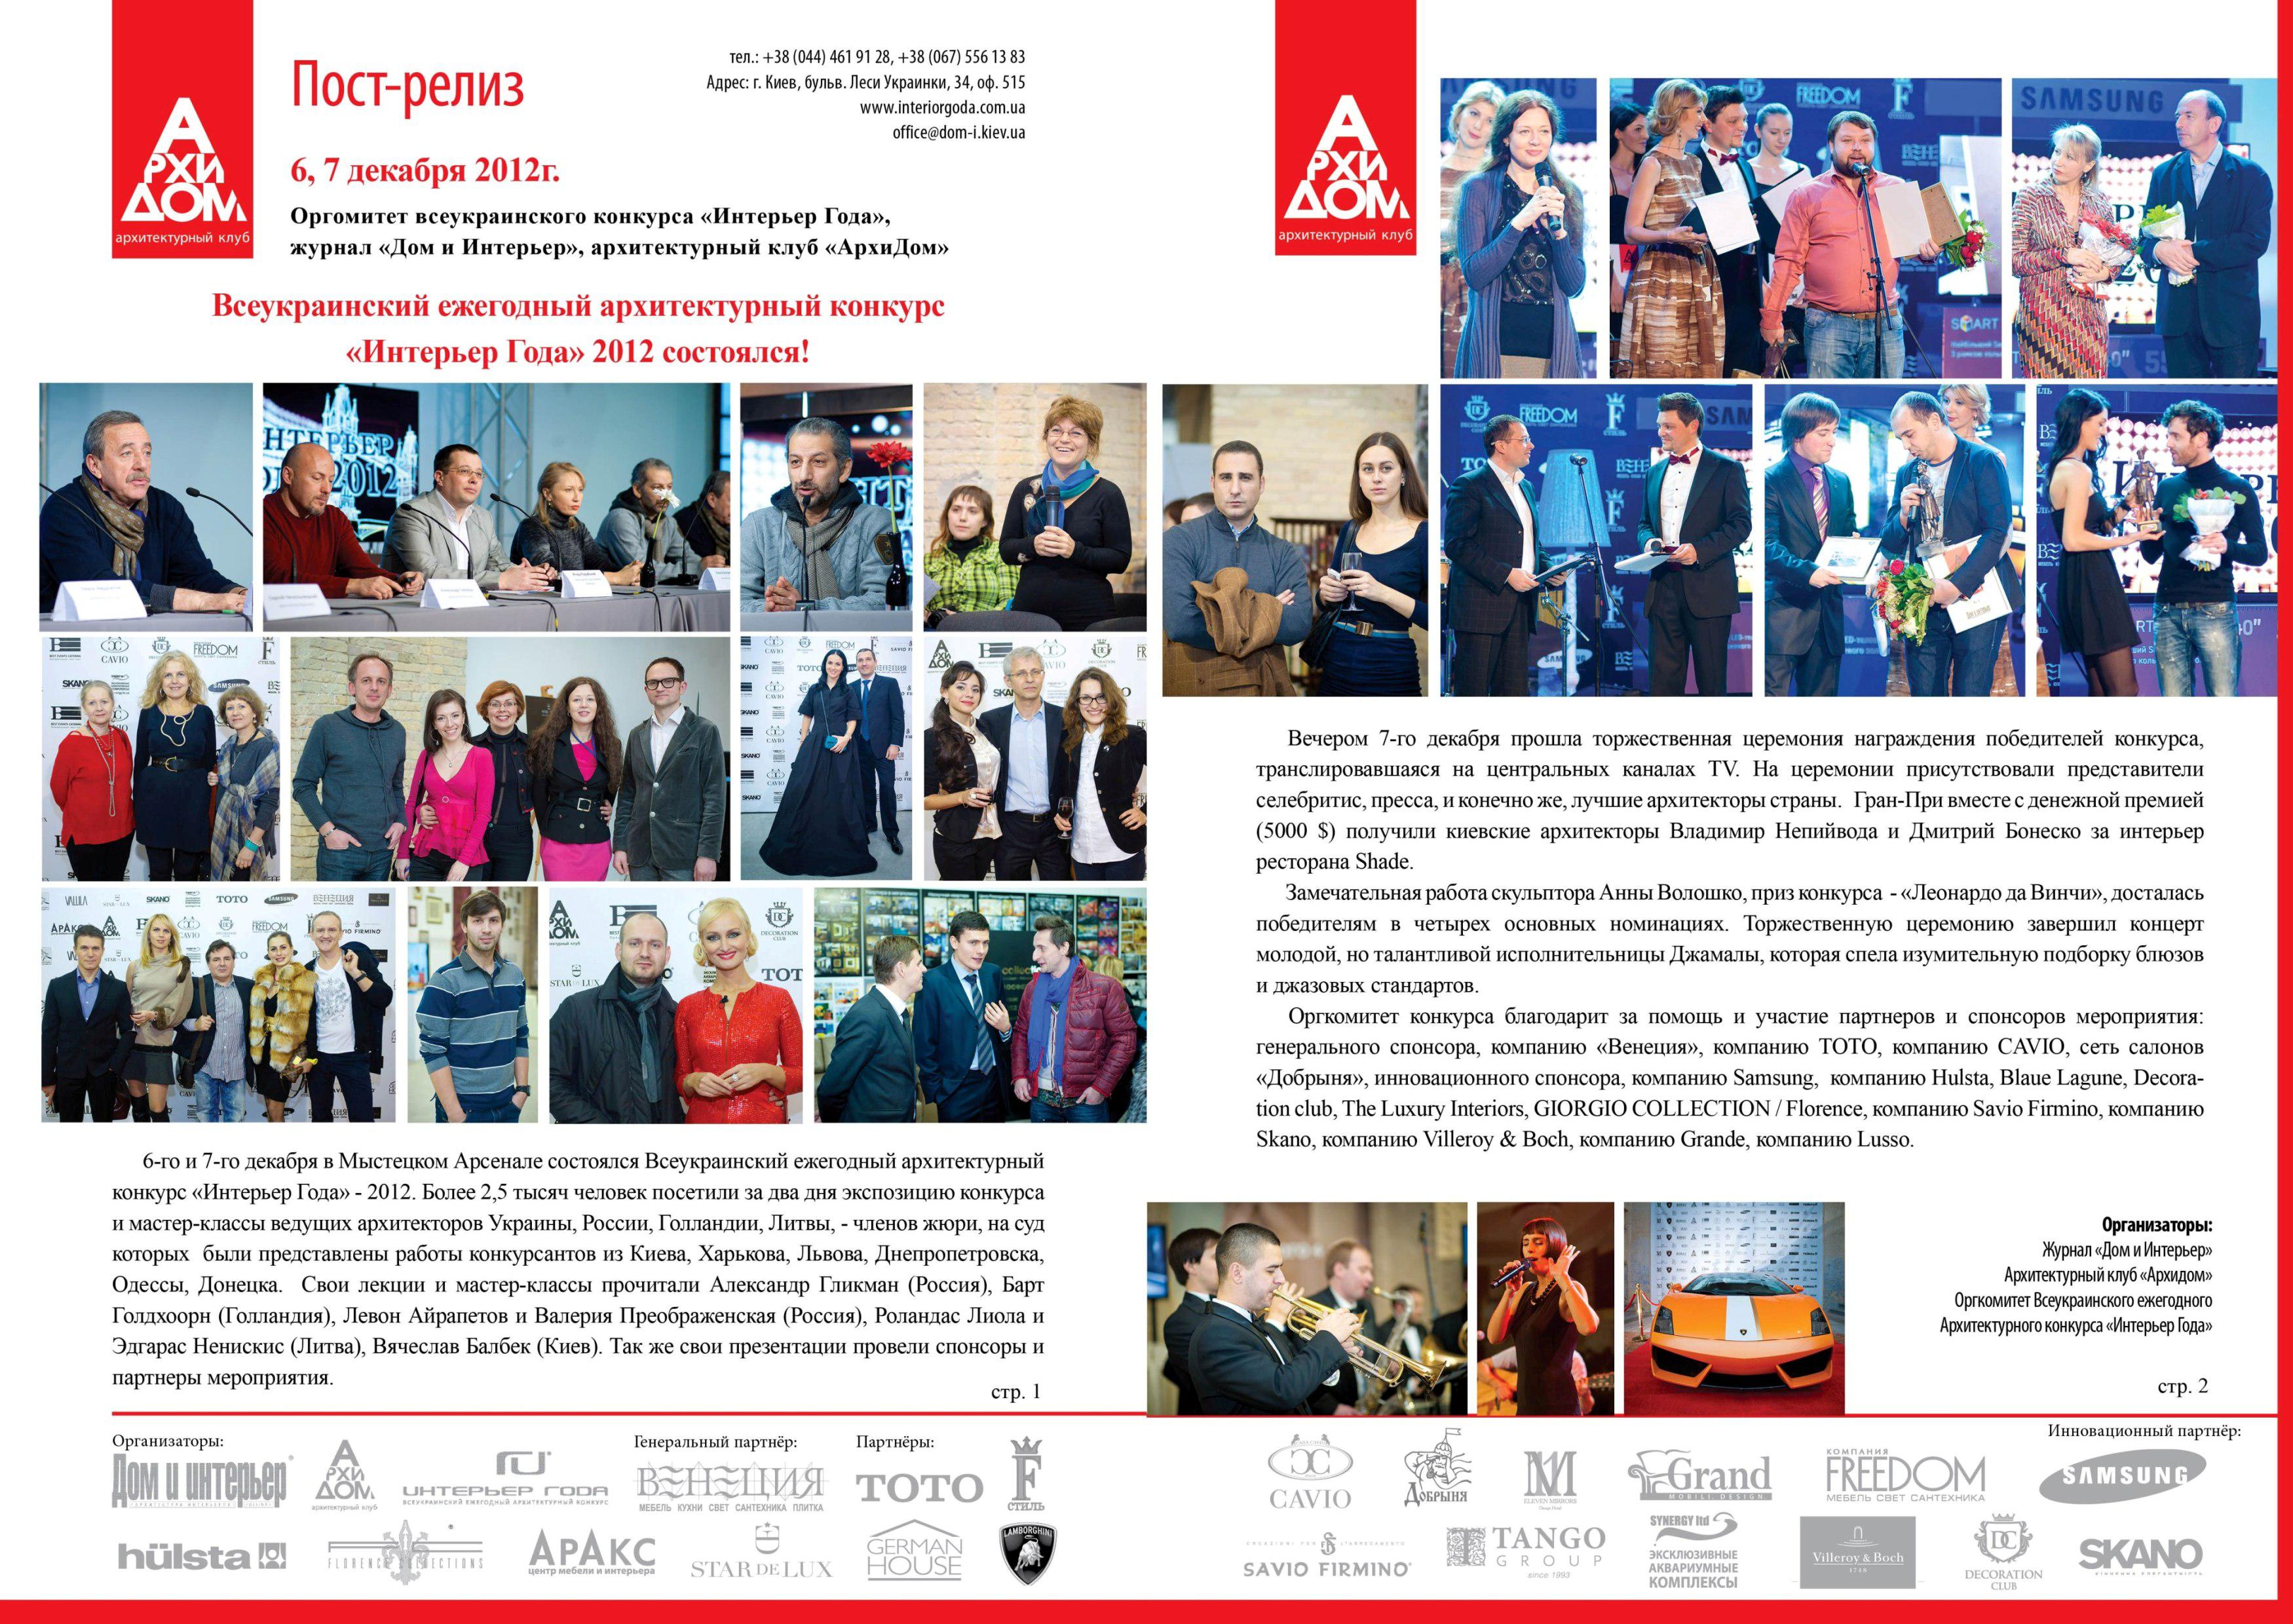 Меблевий ТЦ "Аракс" - серед організаторів конкурсу "Інтер'єр року 2012"